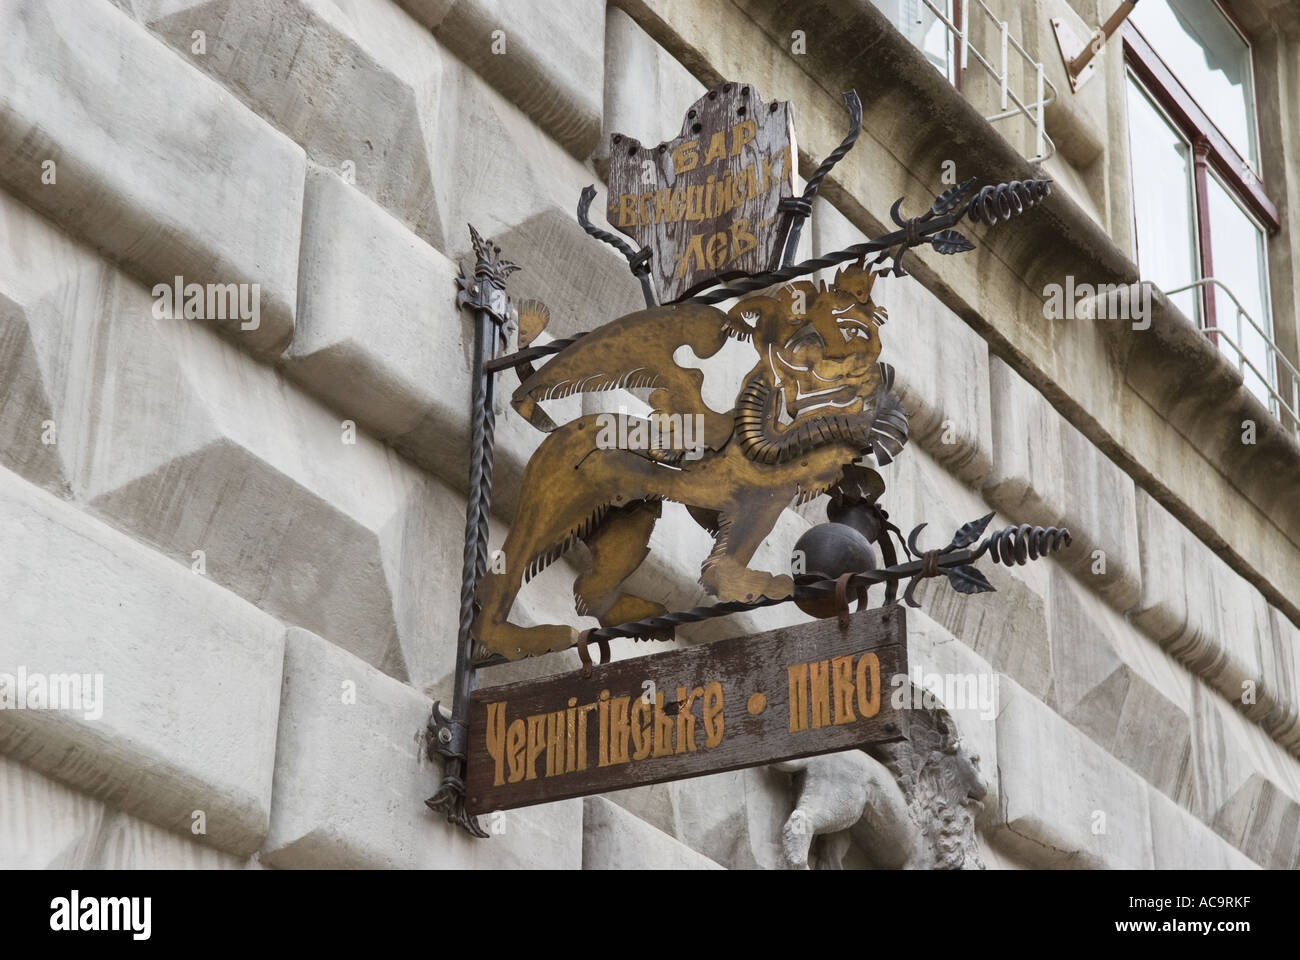 Lion segno per una società di birra Chernihivske a Lviv Ucraina Occidentale Foto Stock